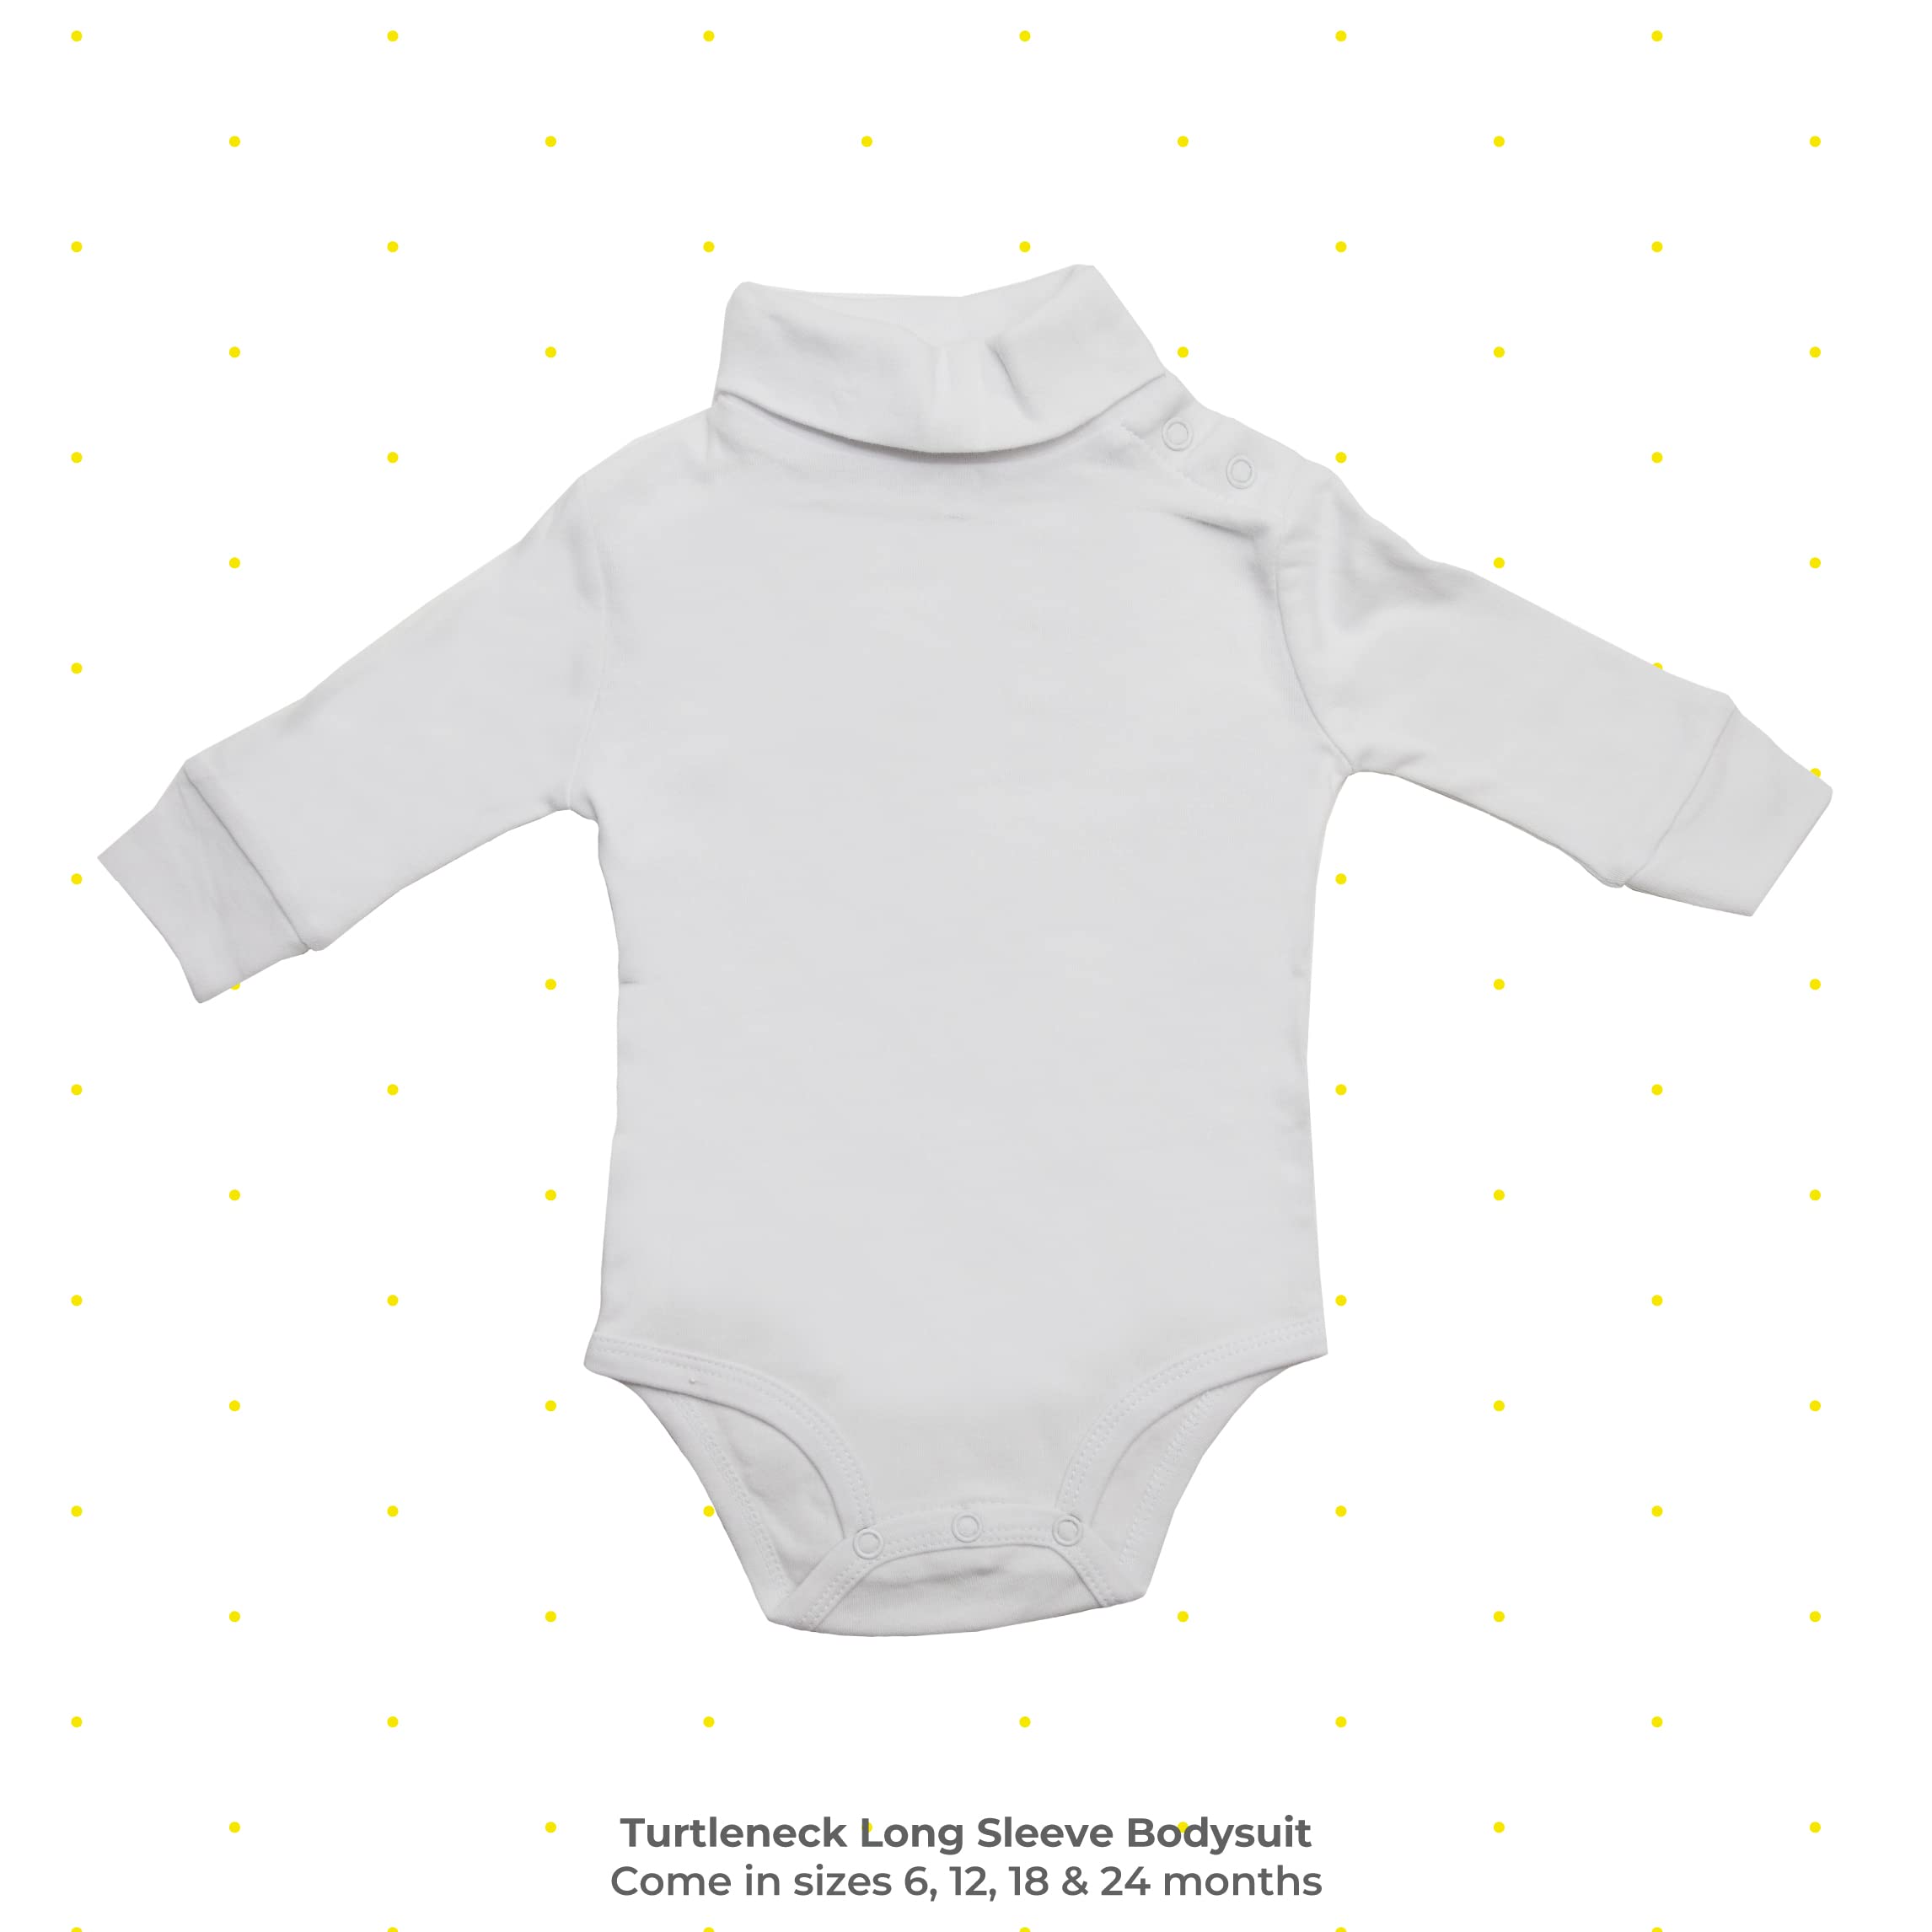 Spasilk Baby Boys' 2 Pack Turtleneck Long Sleeve Bodysuit